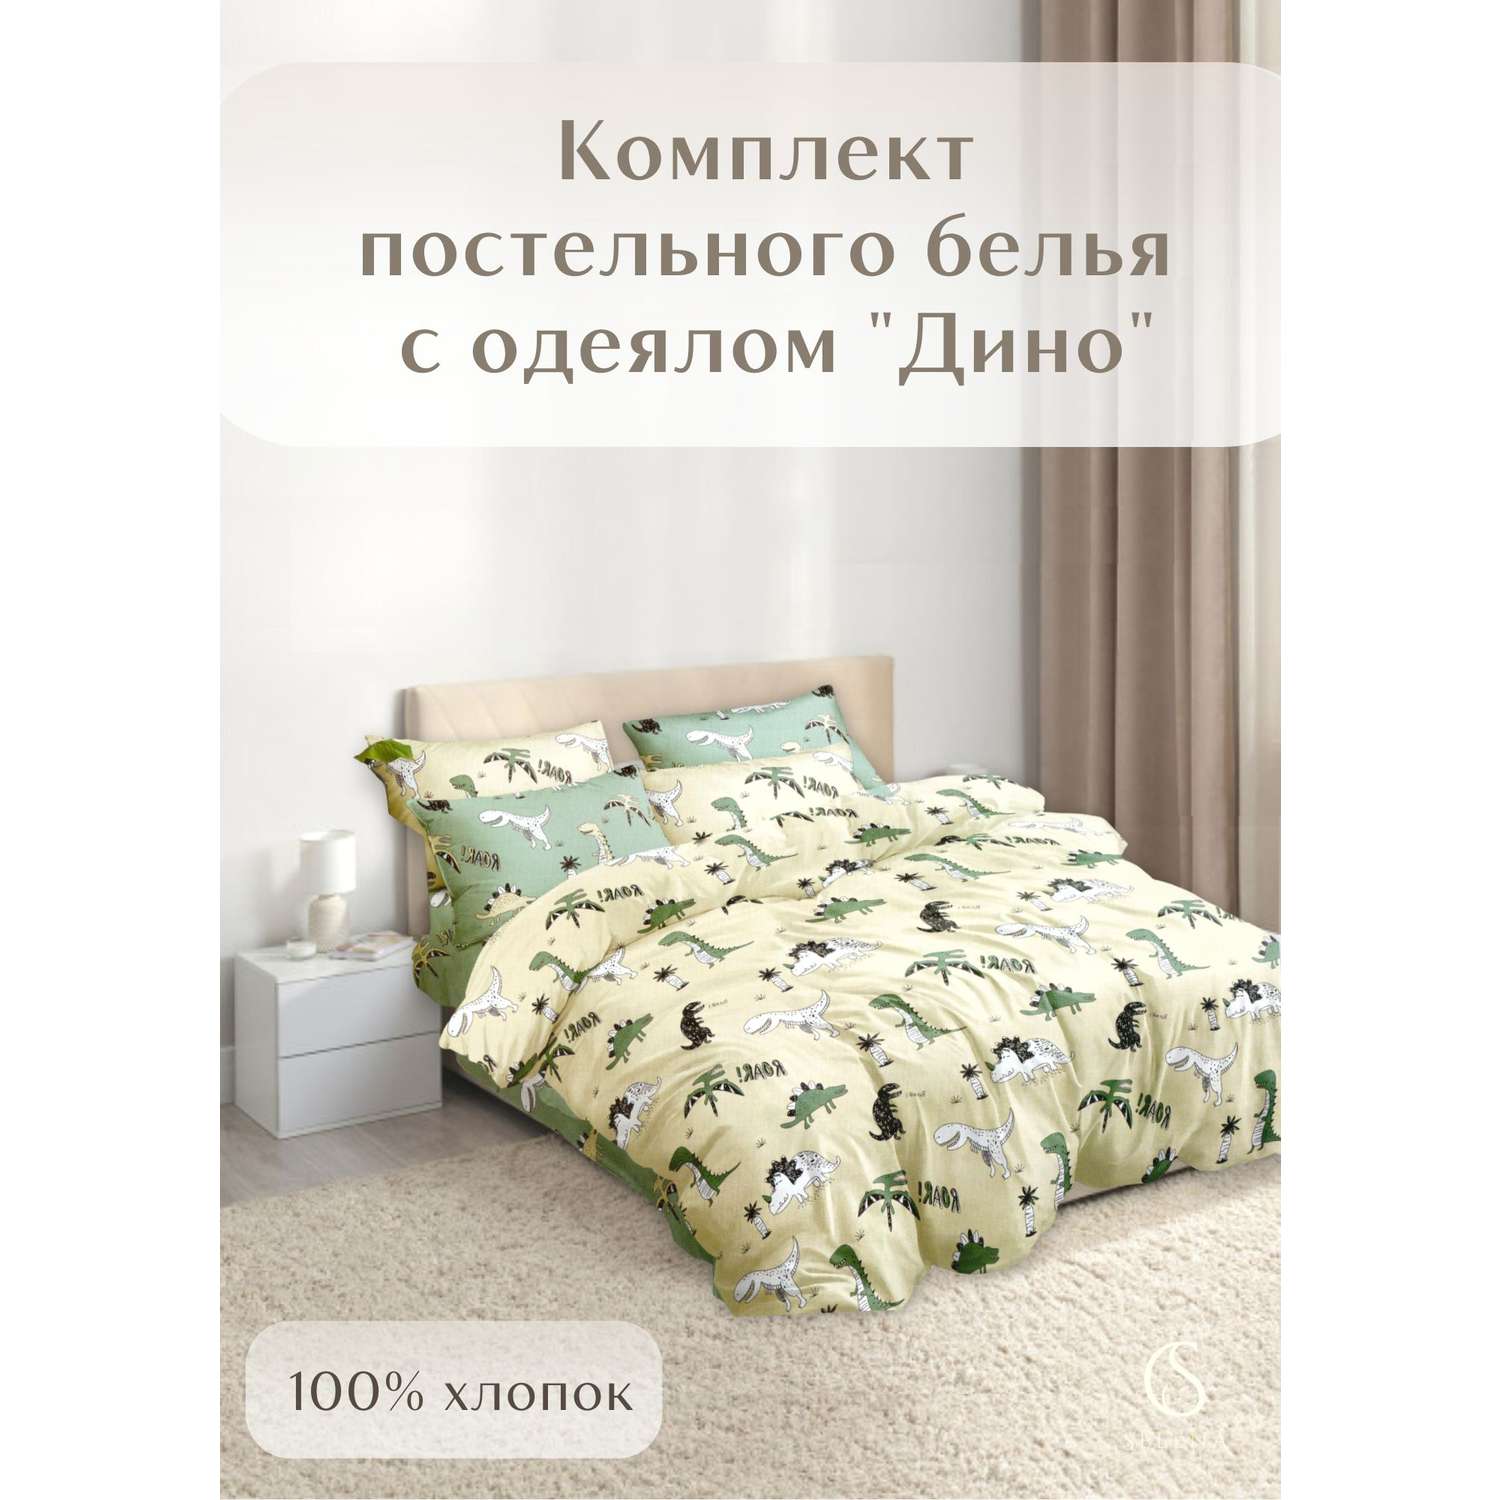 Комплект постельного белья SELENA Дино 1.5-спальный поплин наволочка 70х70 см с одеялом - фото 2